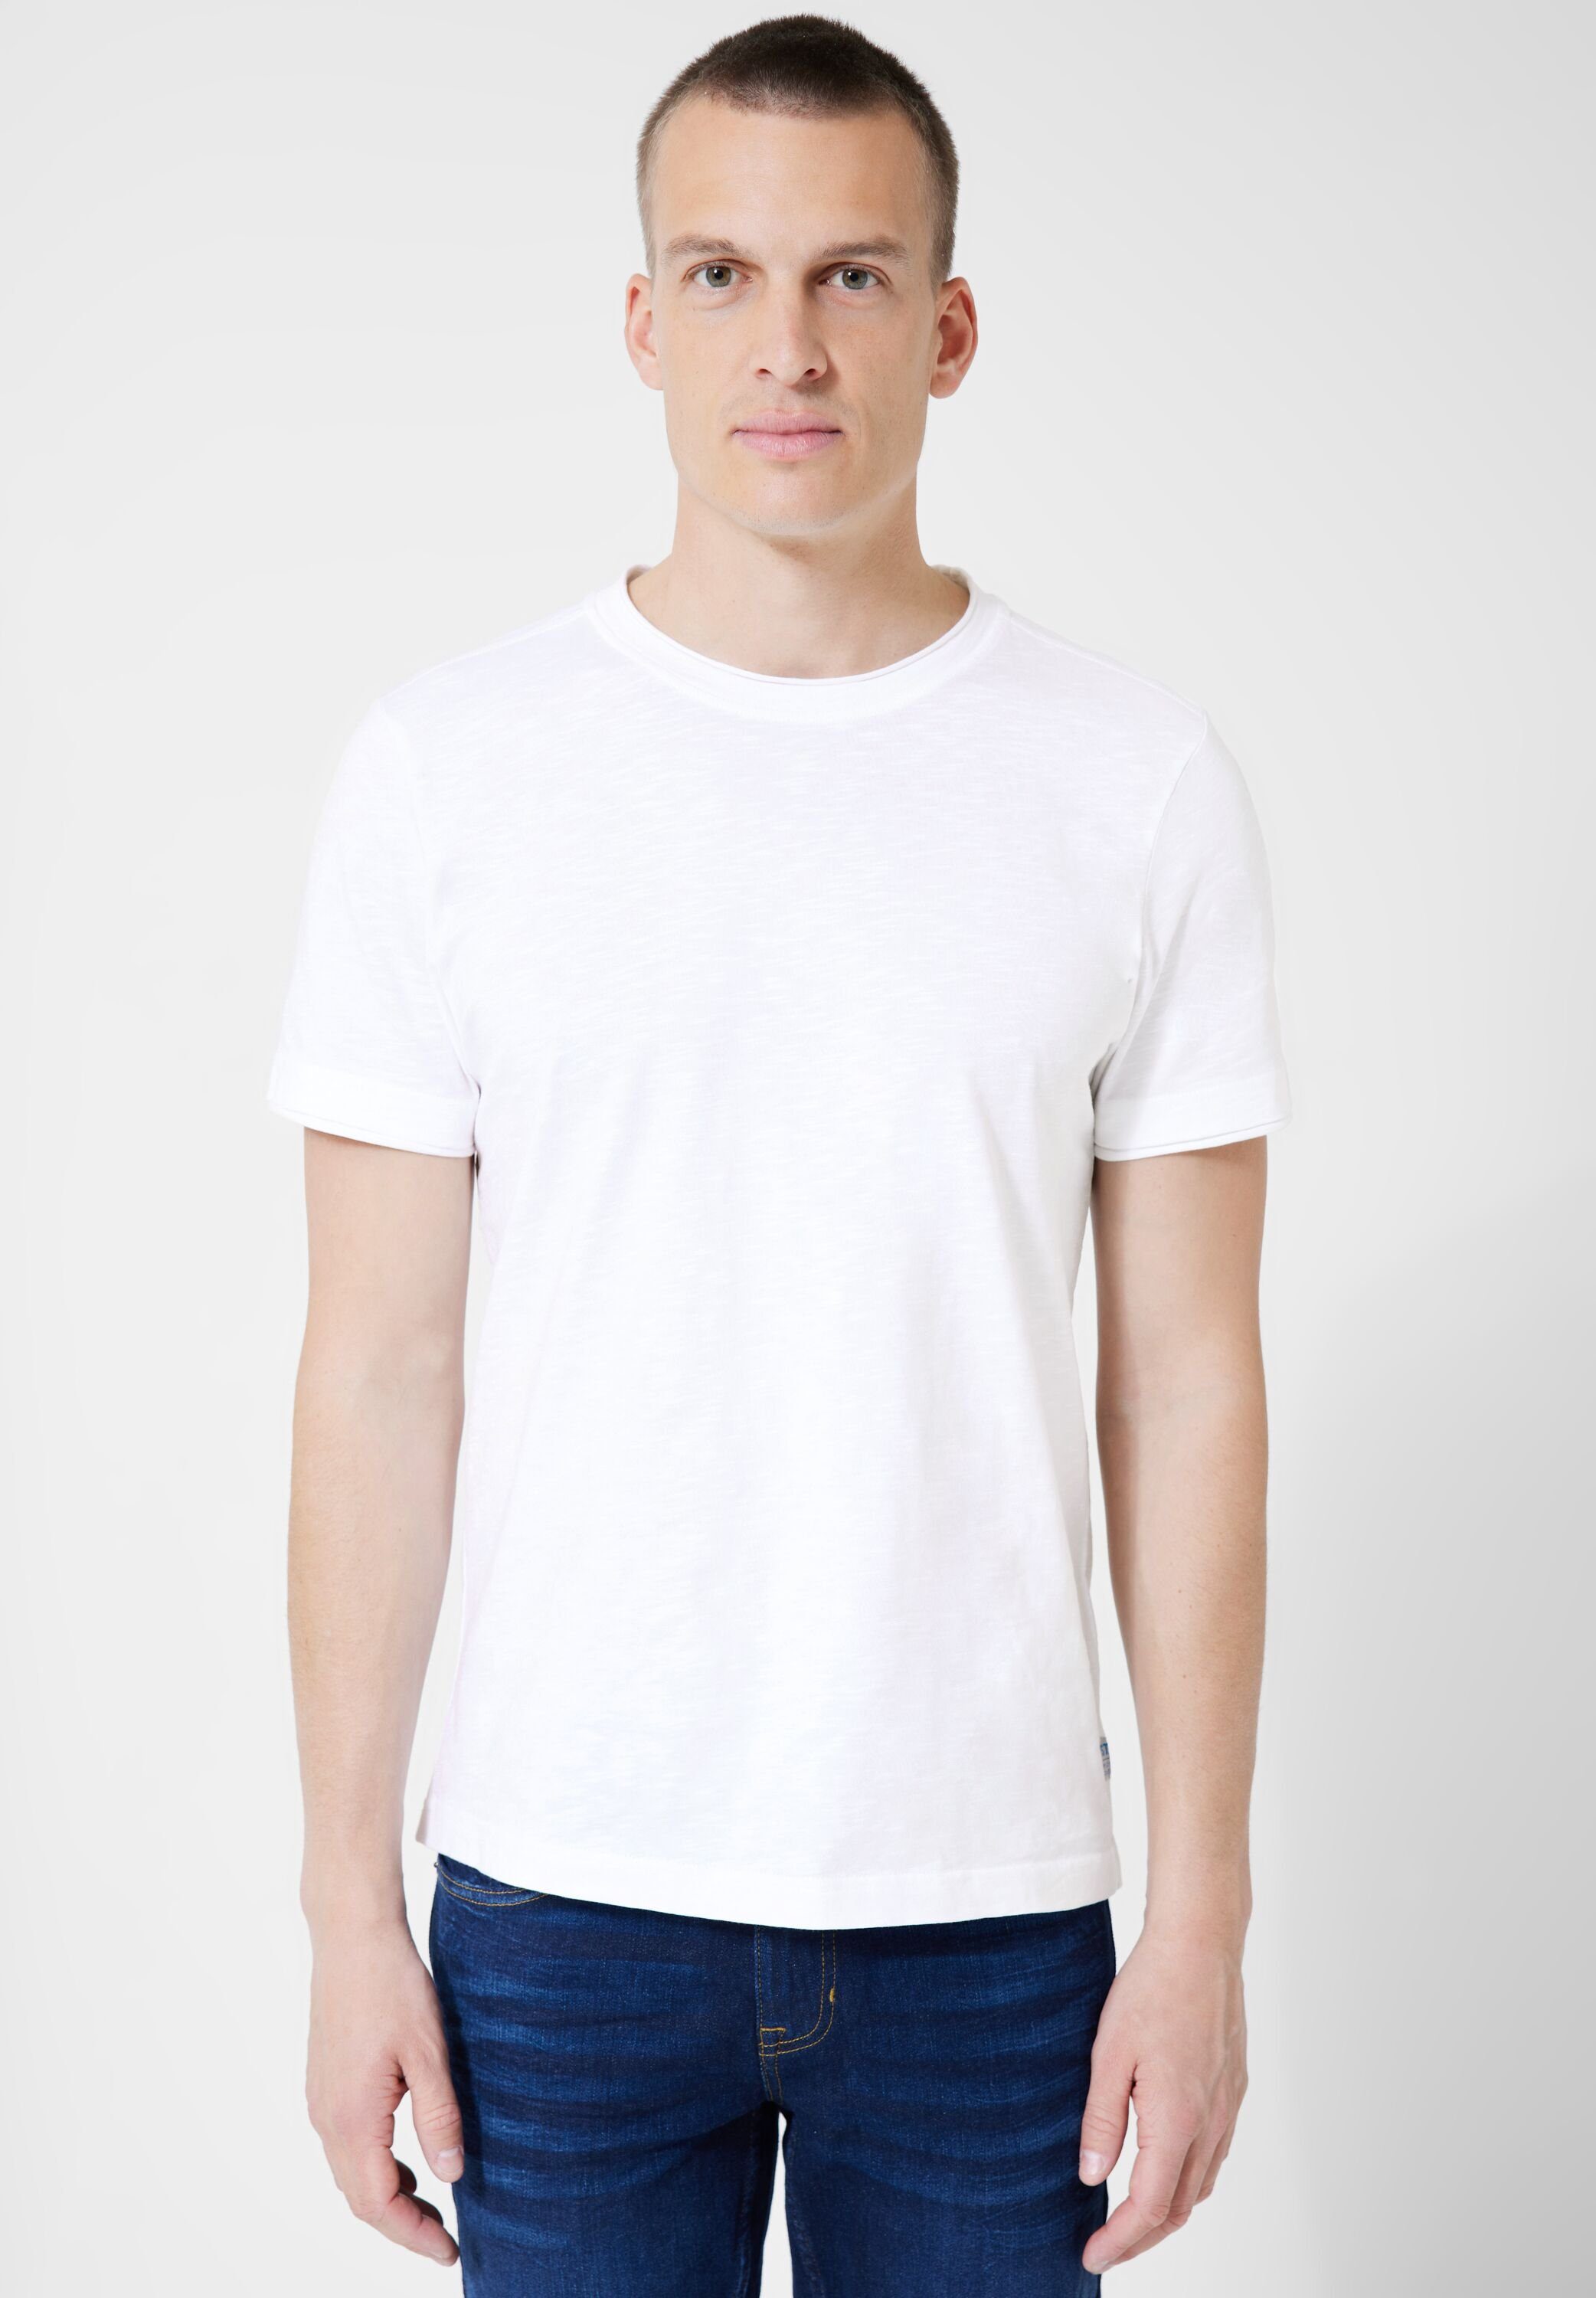 STREET Unifarbe White in ONE MEN T-Shirt